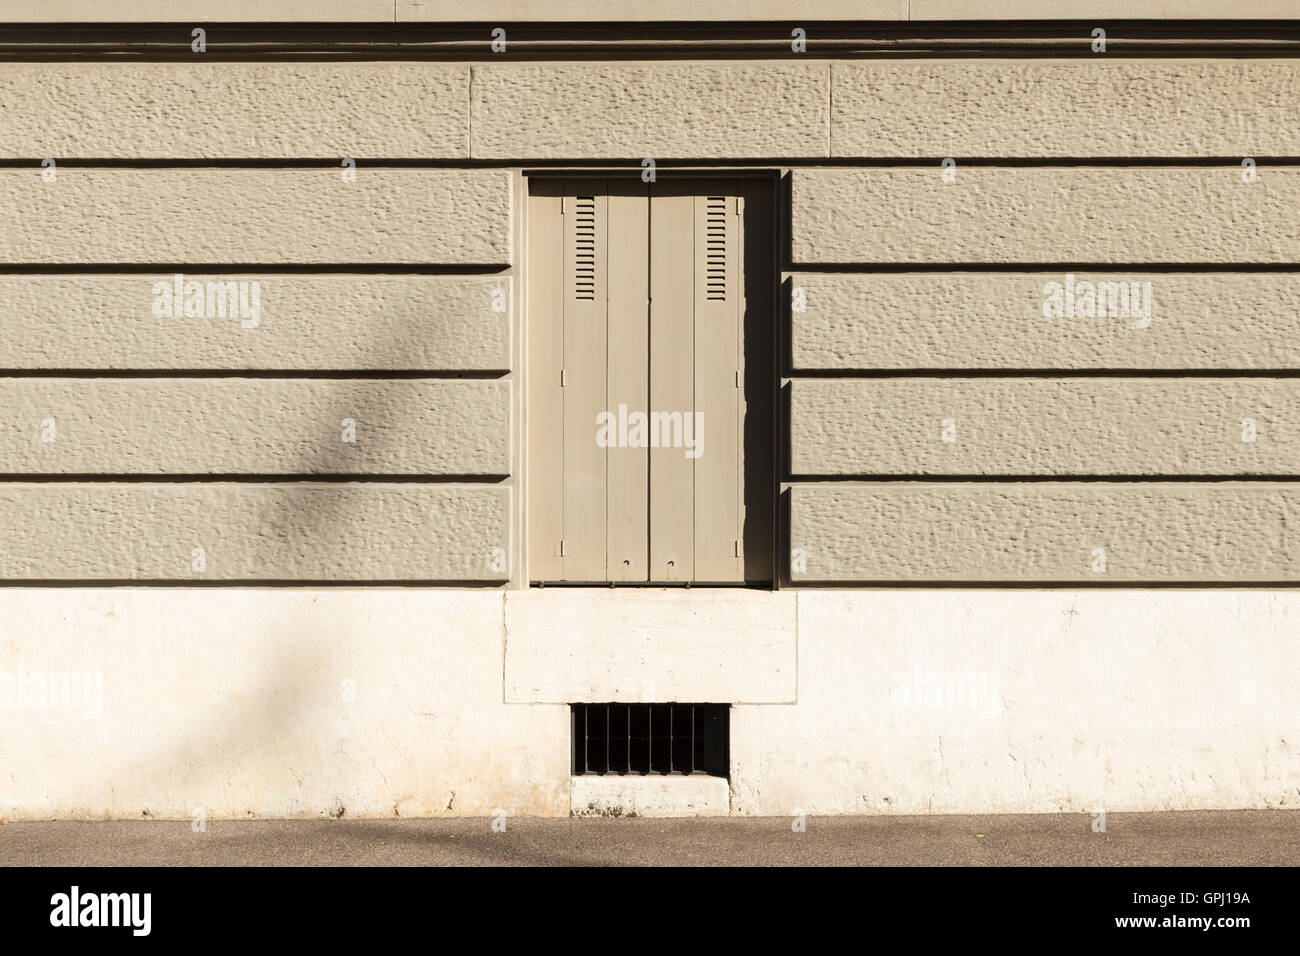 Un mur peint en gris avec des bandes horizontales et une fenêtre avec des volets fermés. Banque D'Images